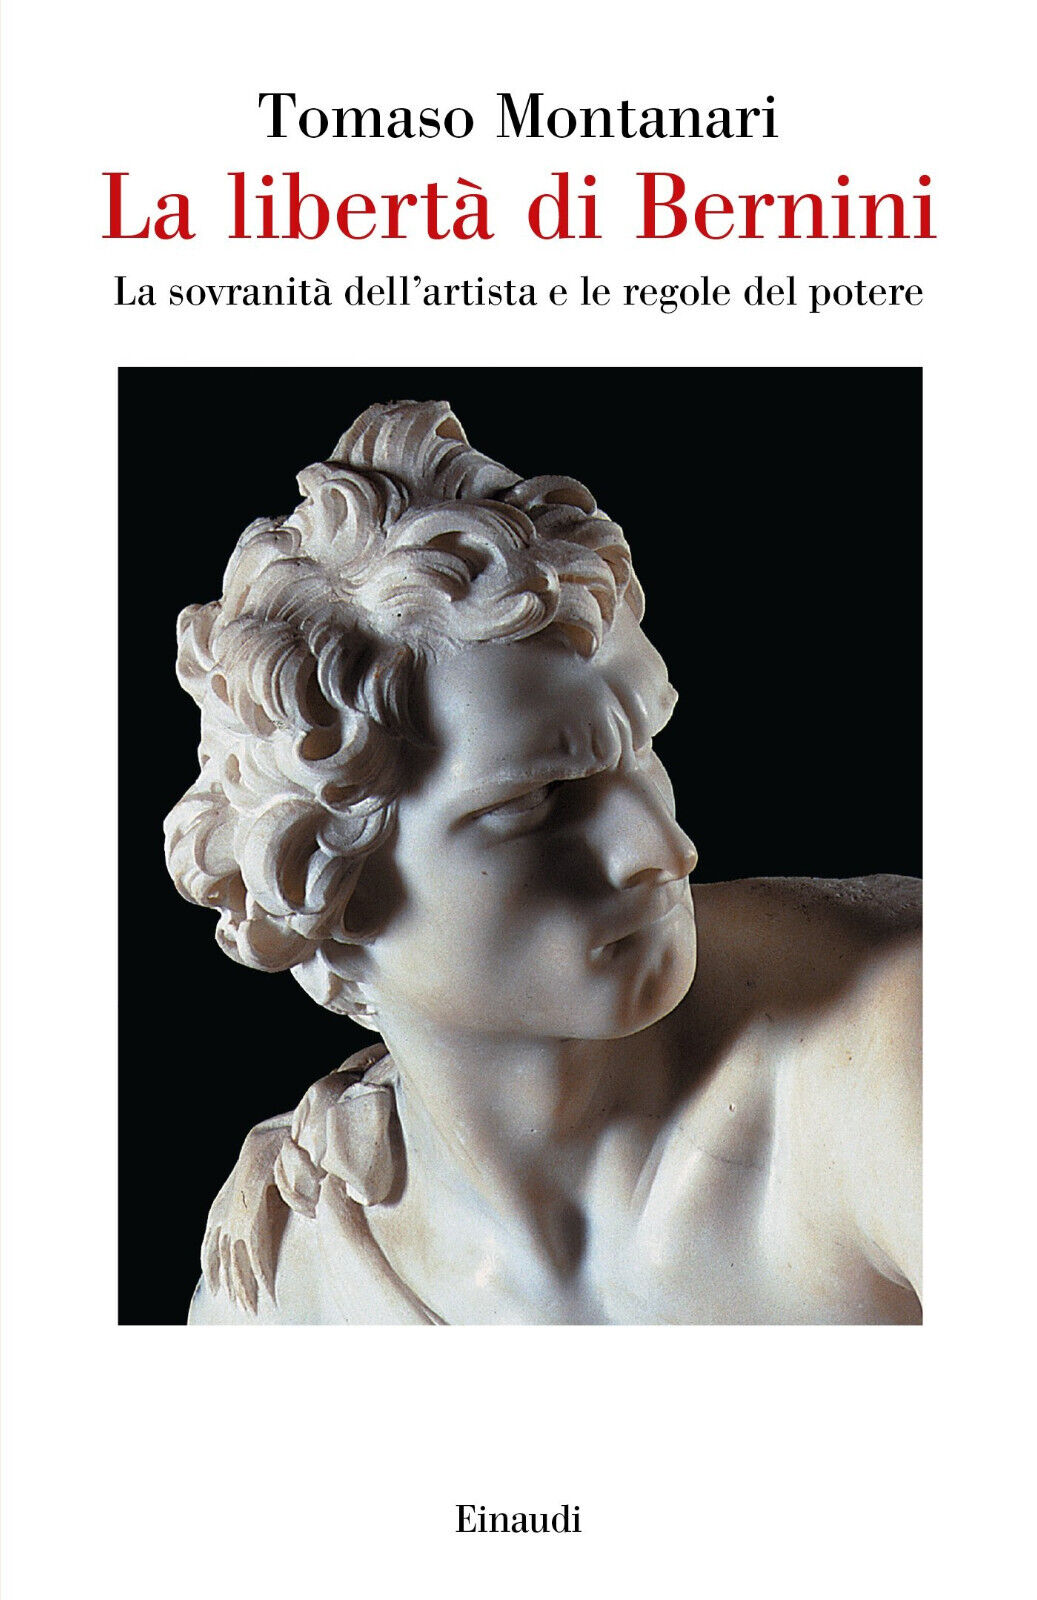 La libert? di Bernini - Tomaso Montanari - einaudi, 2016 libro usato